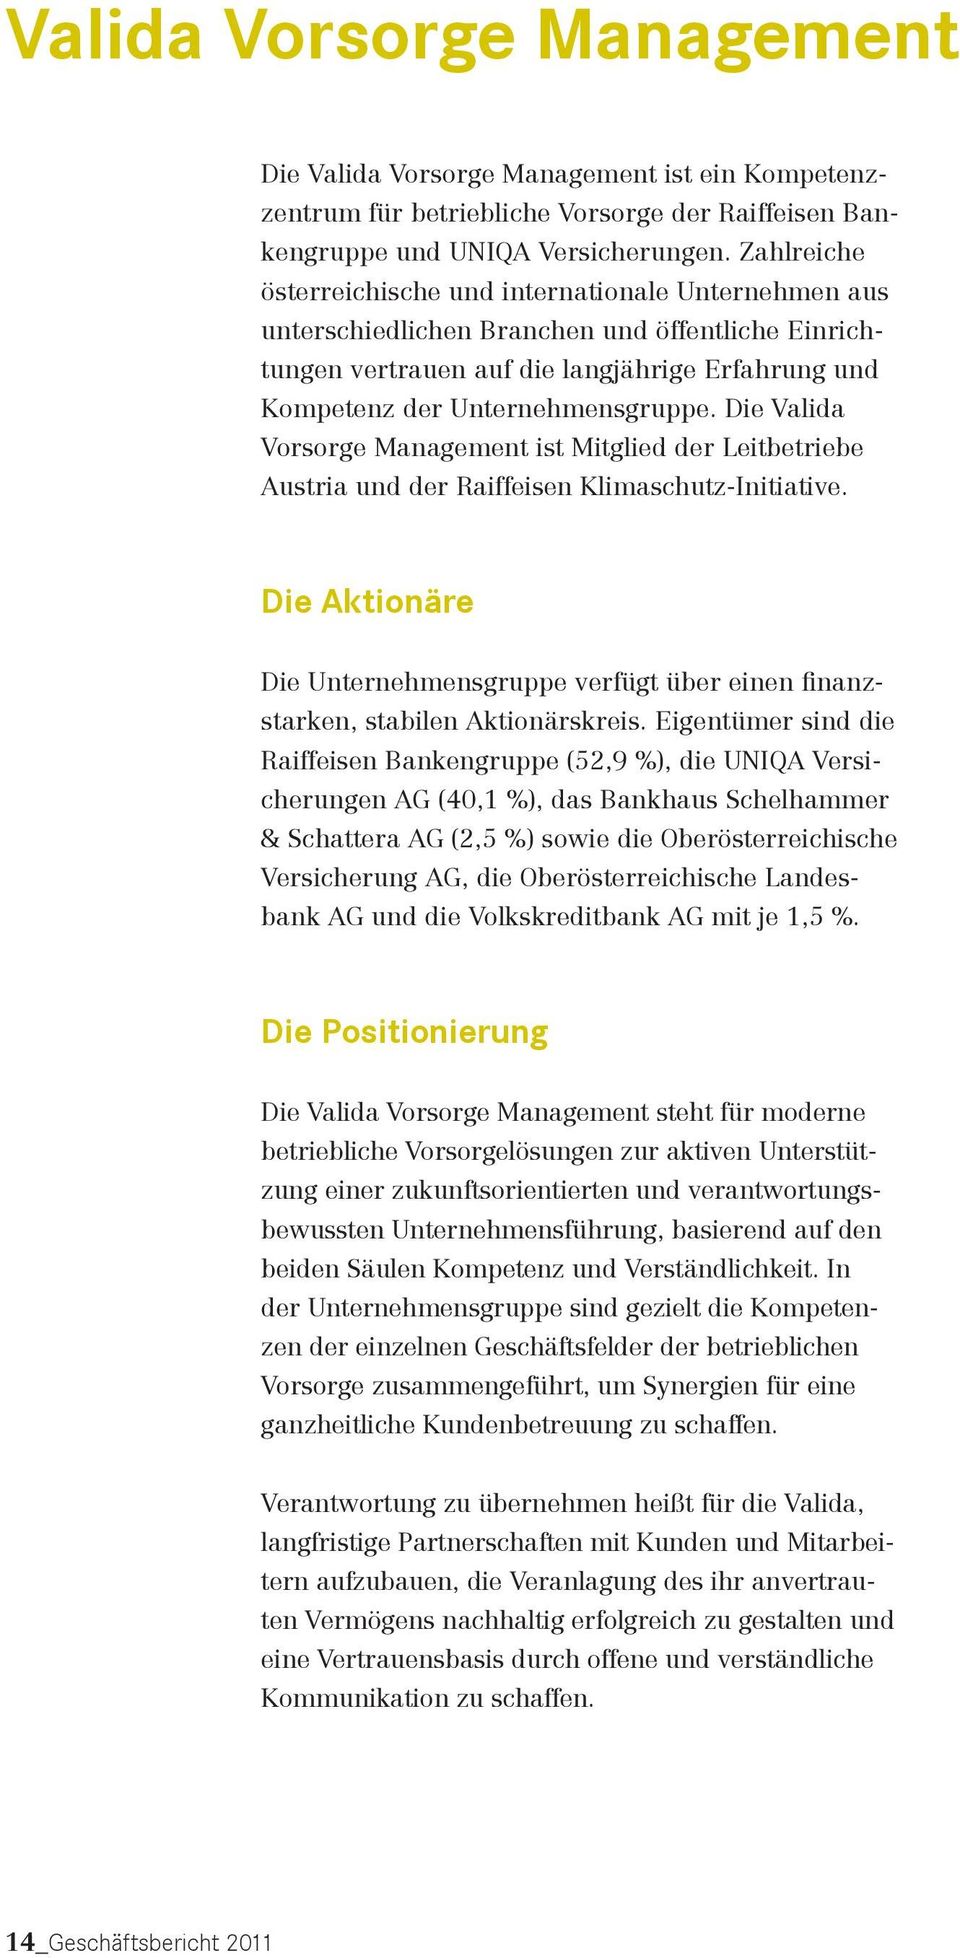 Die Valida Vorsorge Management ist Mitglied der Leitbetriebe Austria und der Raiffeisen Klimaschutz-Initiative.